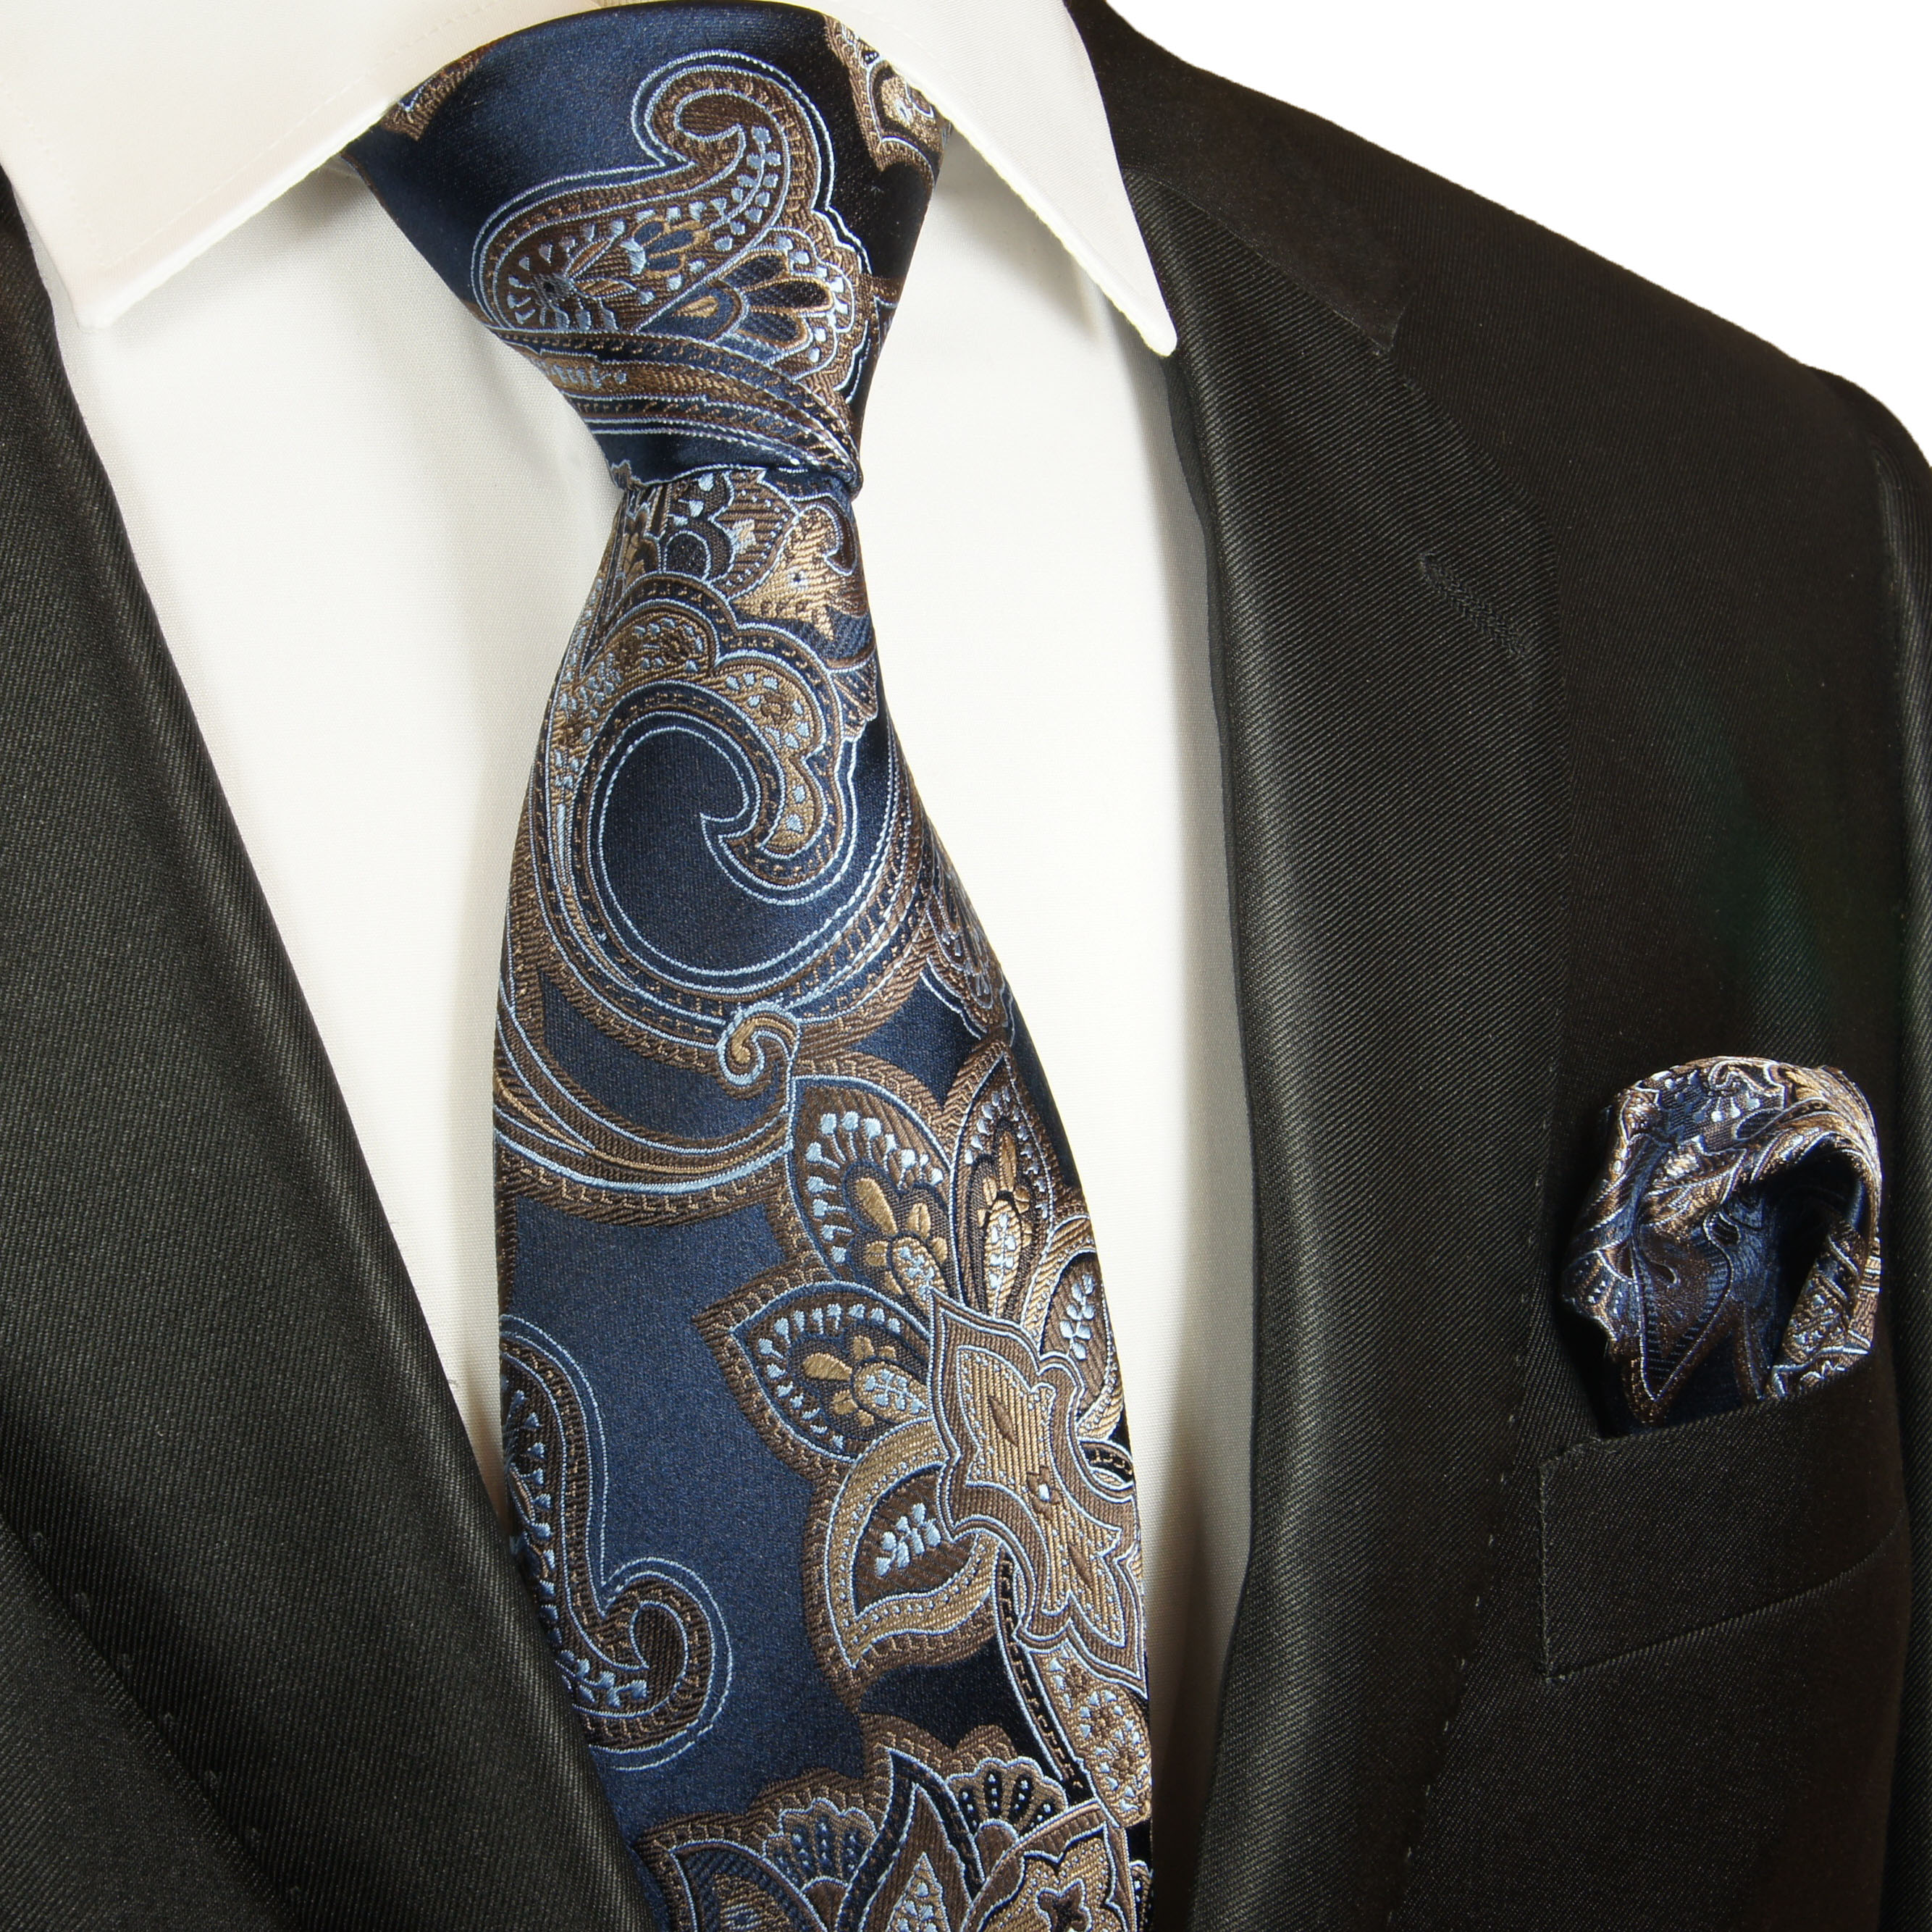 schmale TigerTie Designer Krawatte in braun gold blau schwarz Paisley gemustert